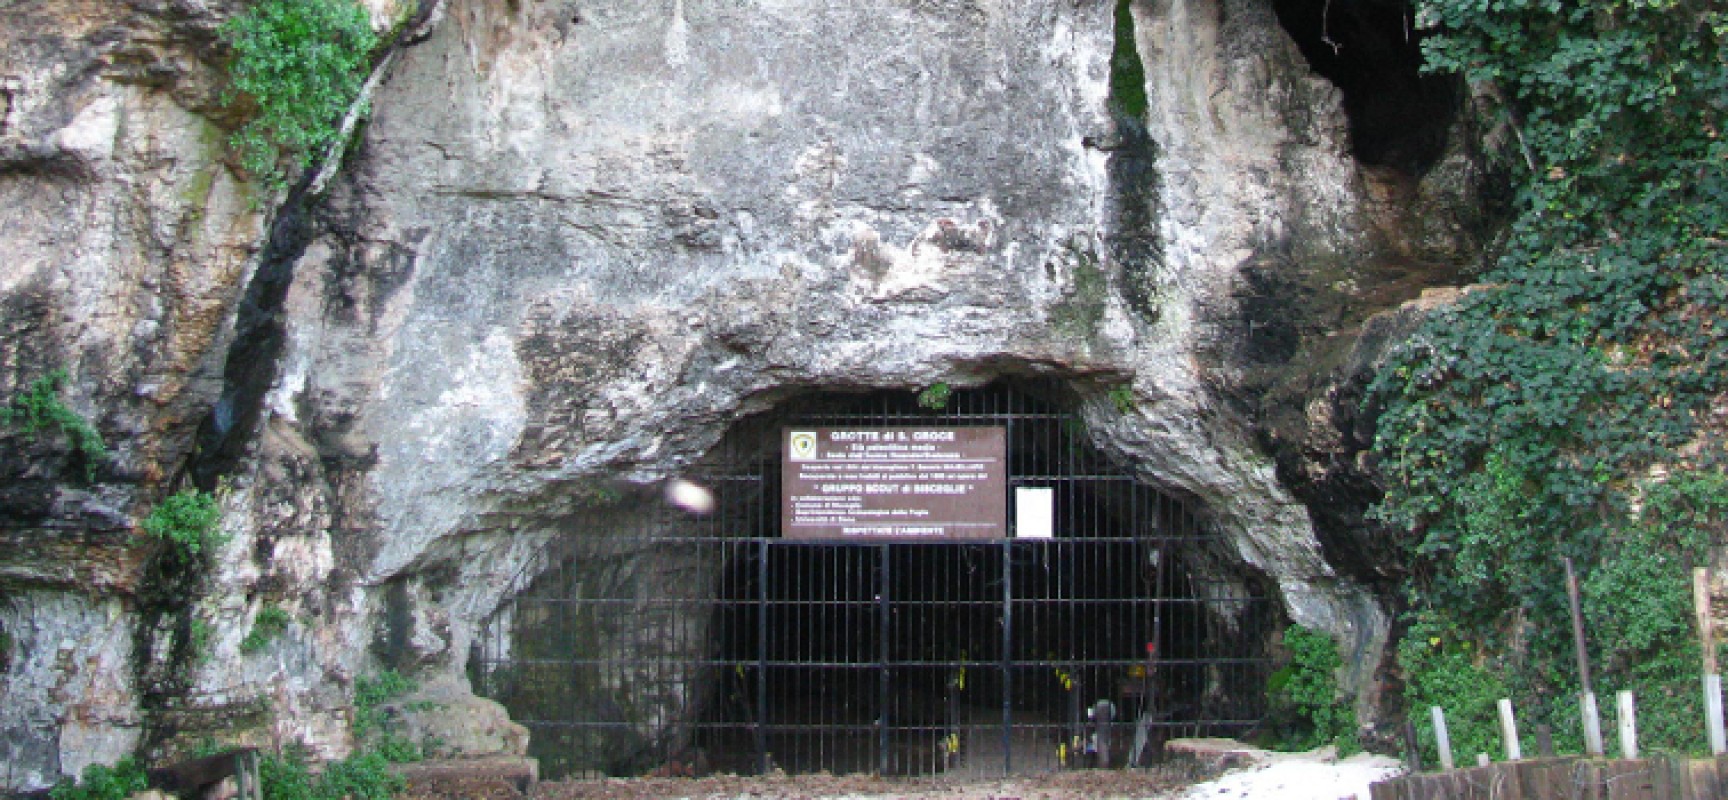 Grotte di Santa Croce, il Comune decreta la riapertura per accertamenti